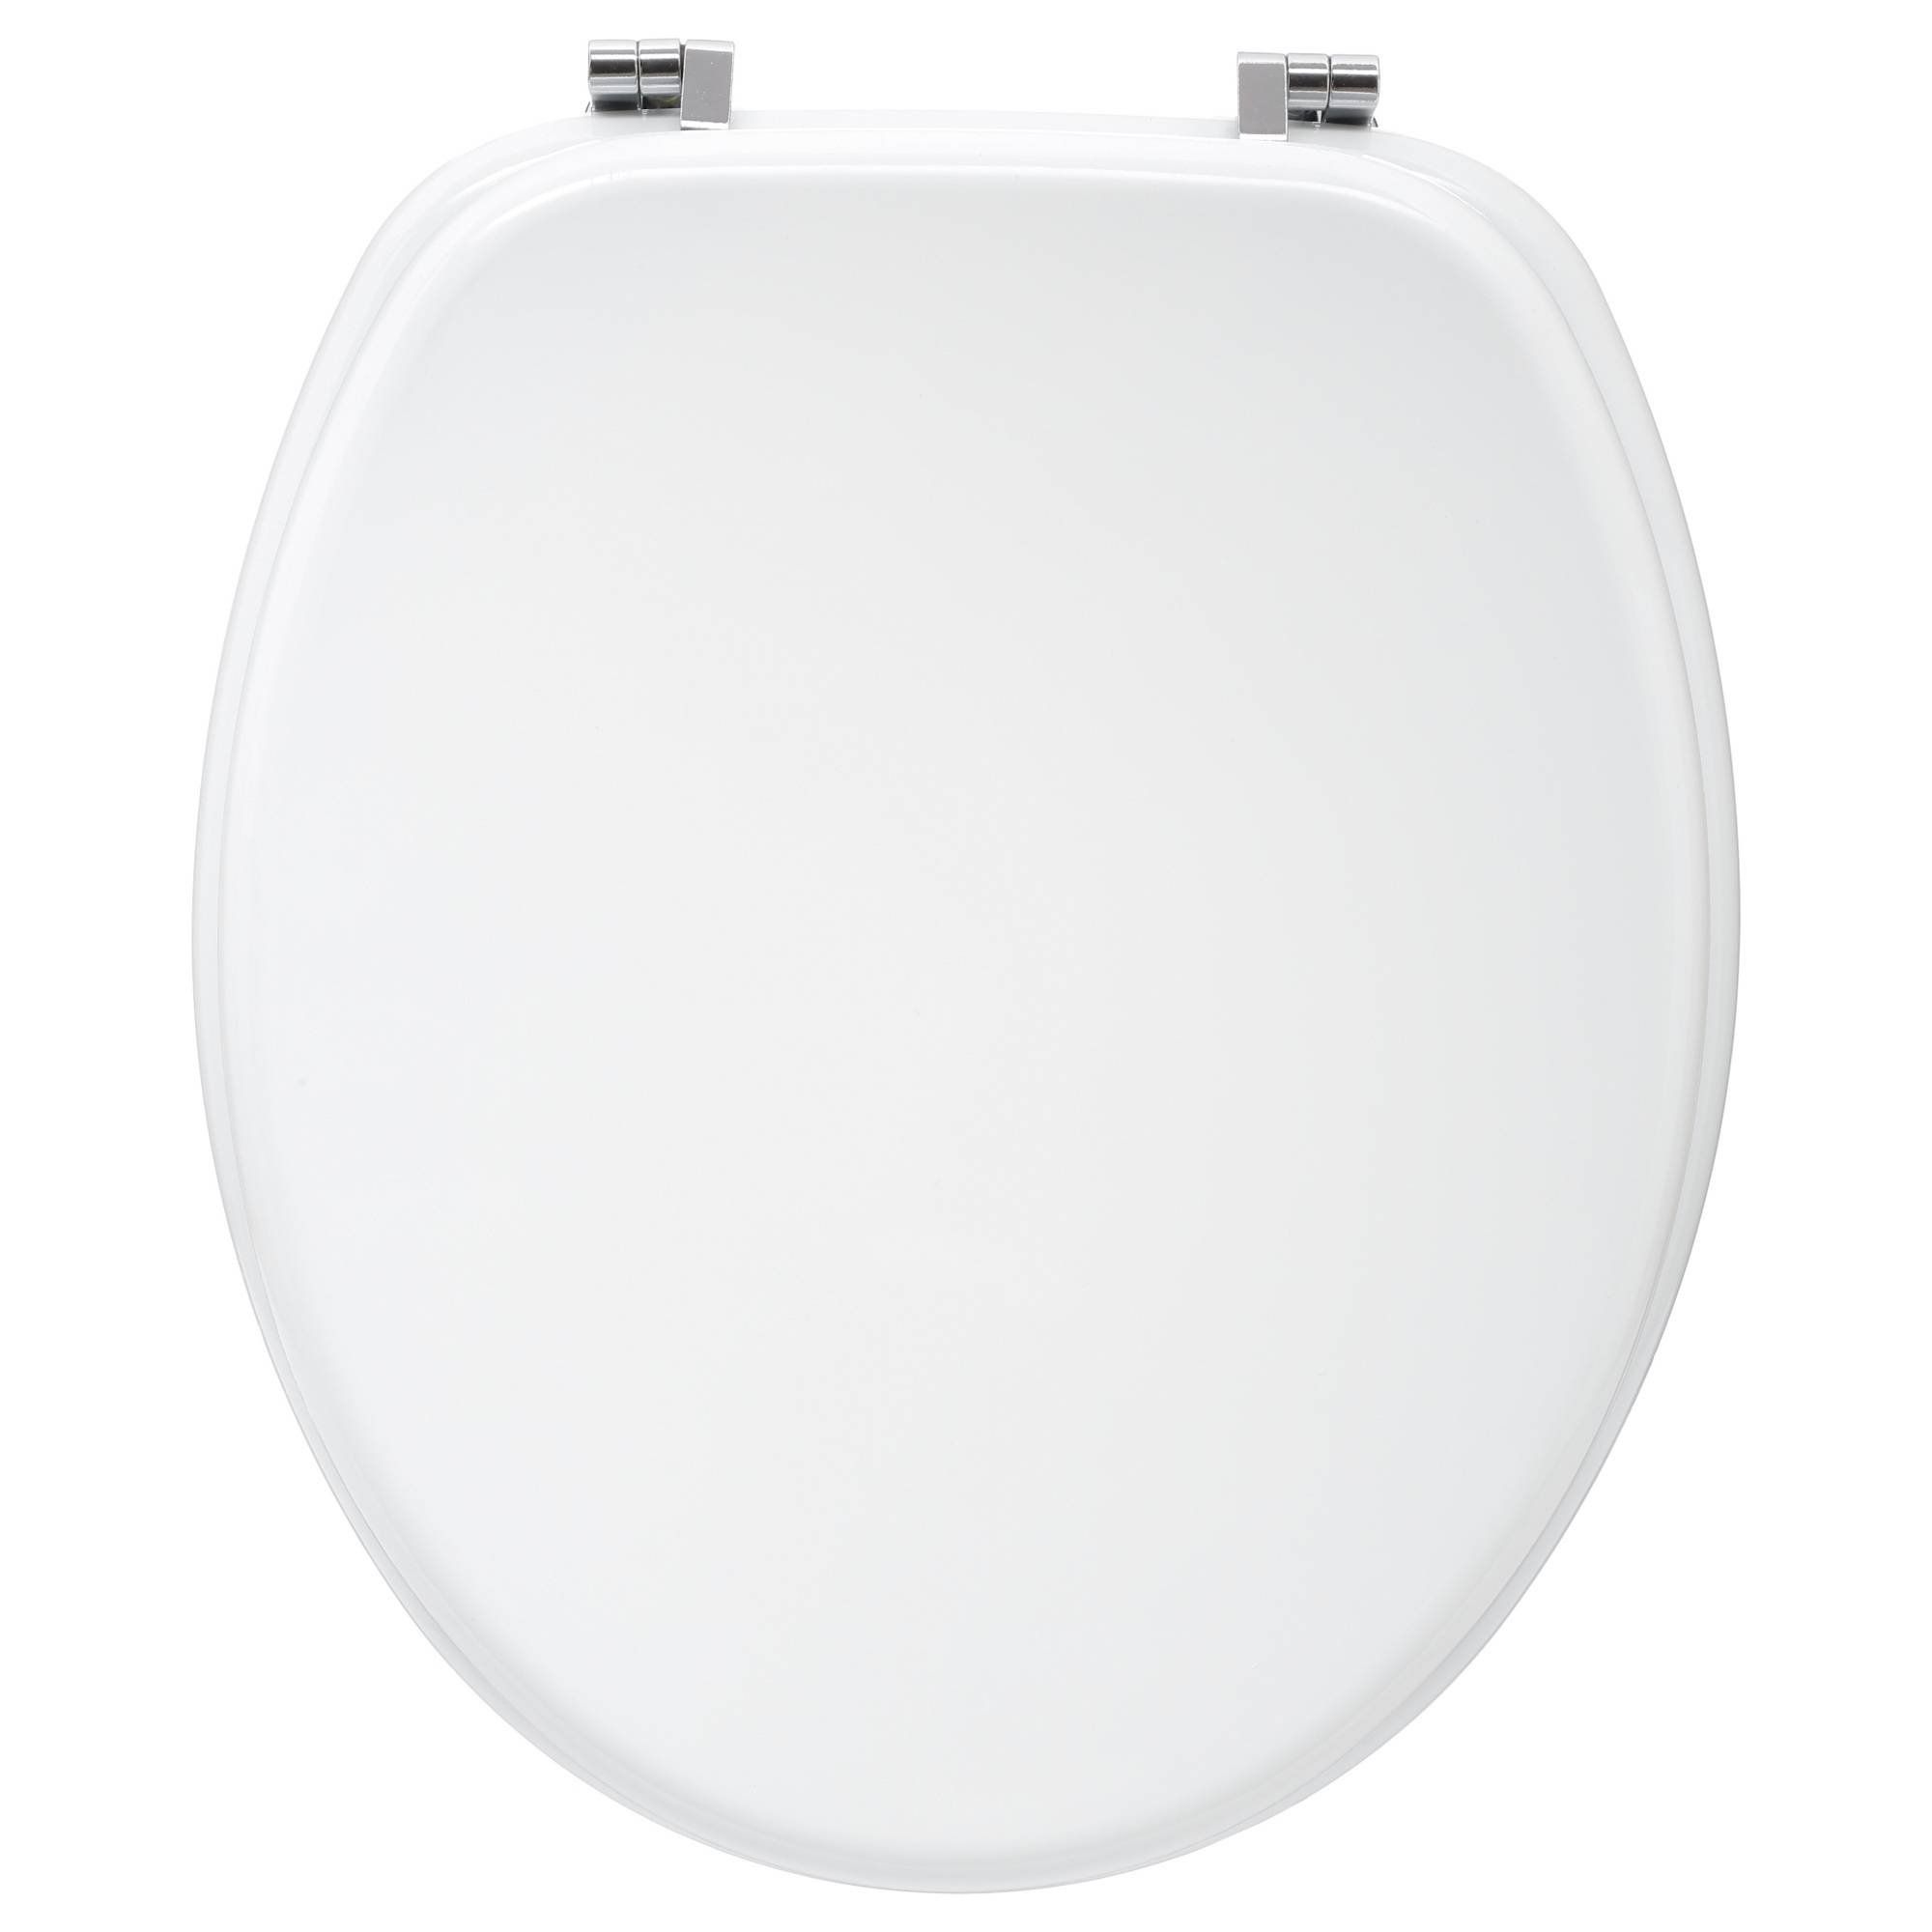 5five Simply Smart WC sedátko, 37 x 43 cm, bílé - EDAXO.CZ s.r.o.